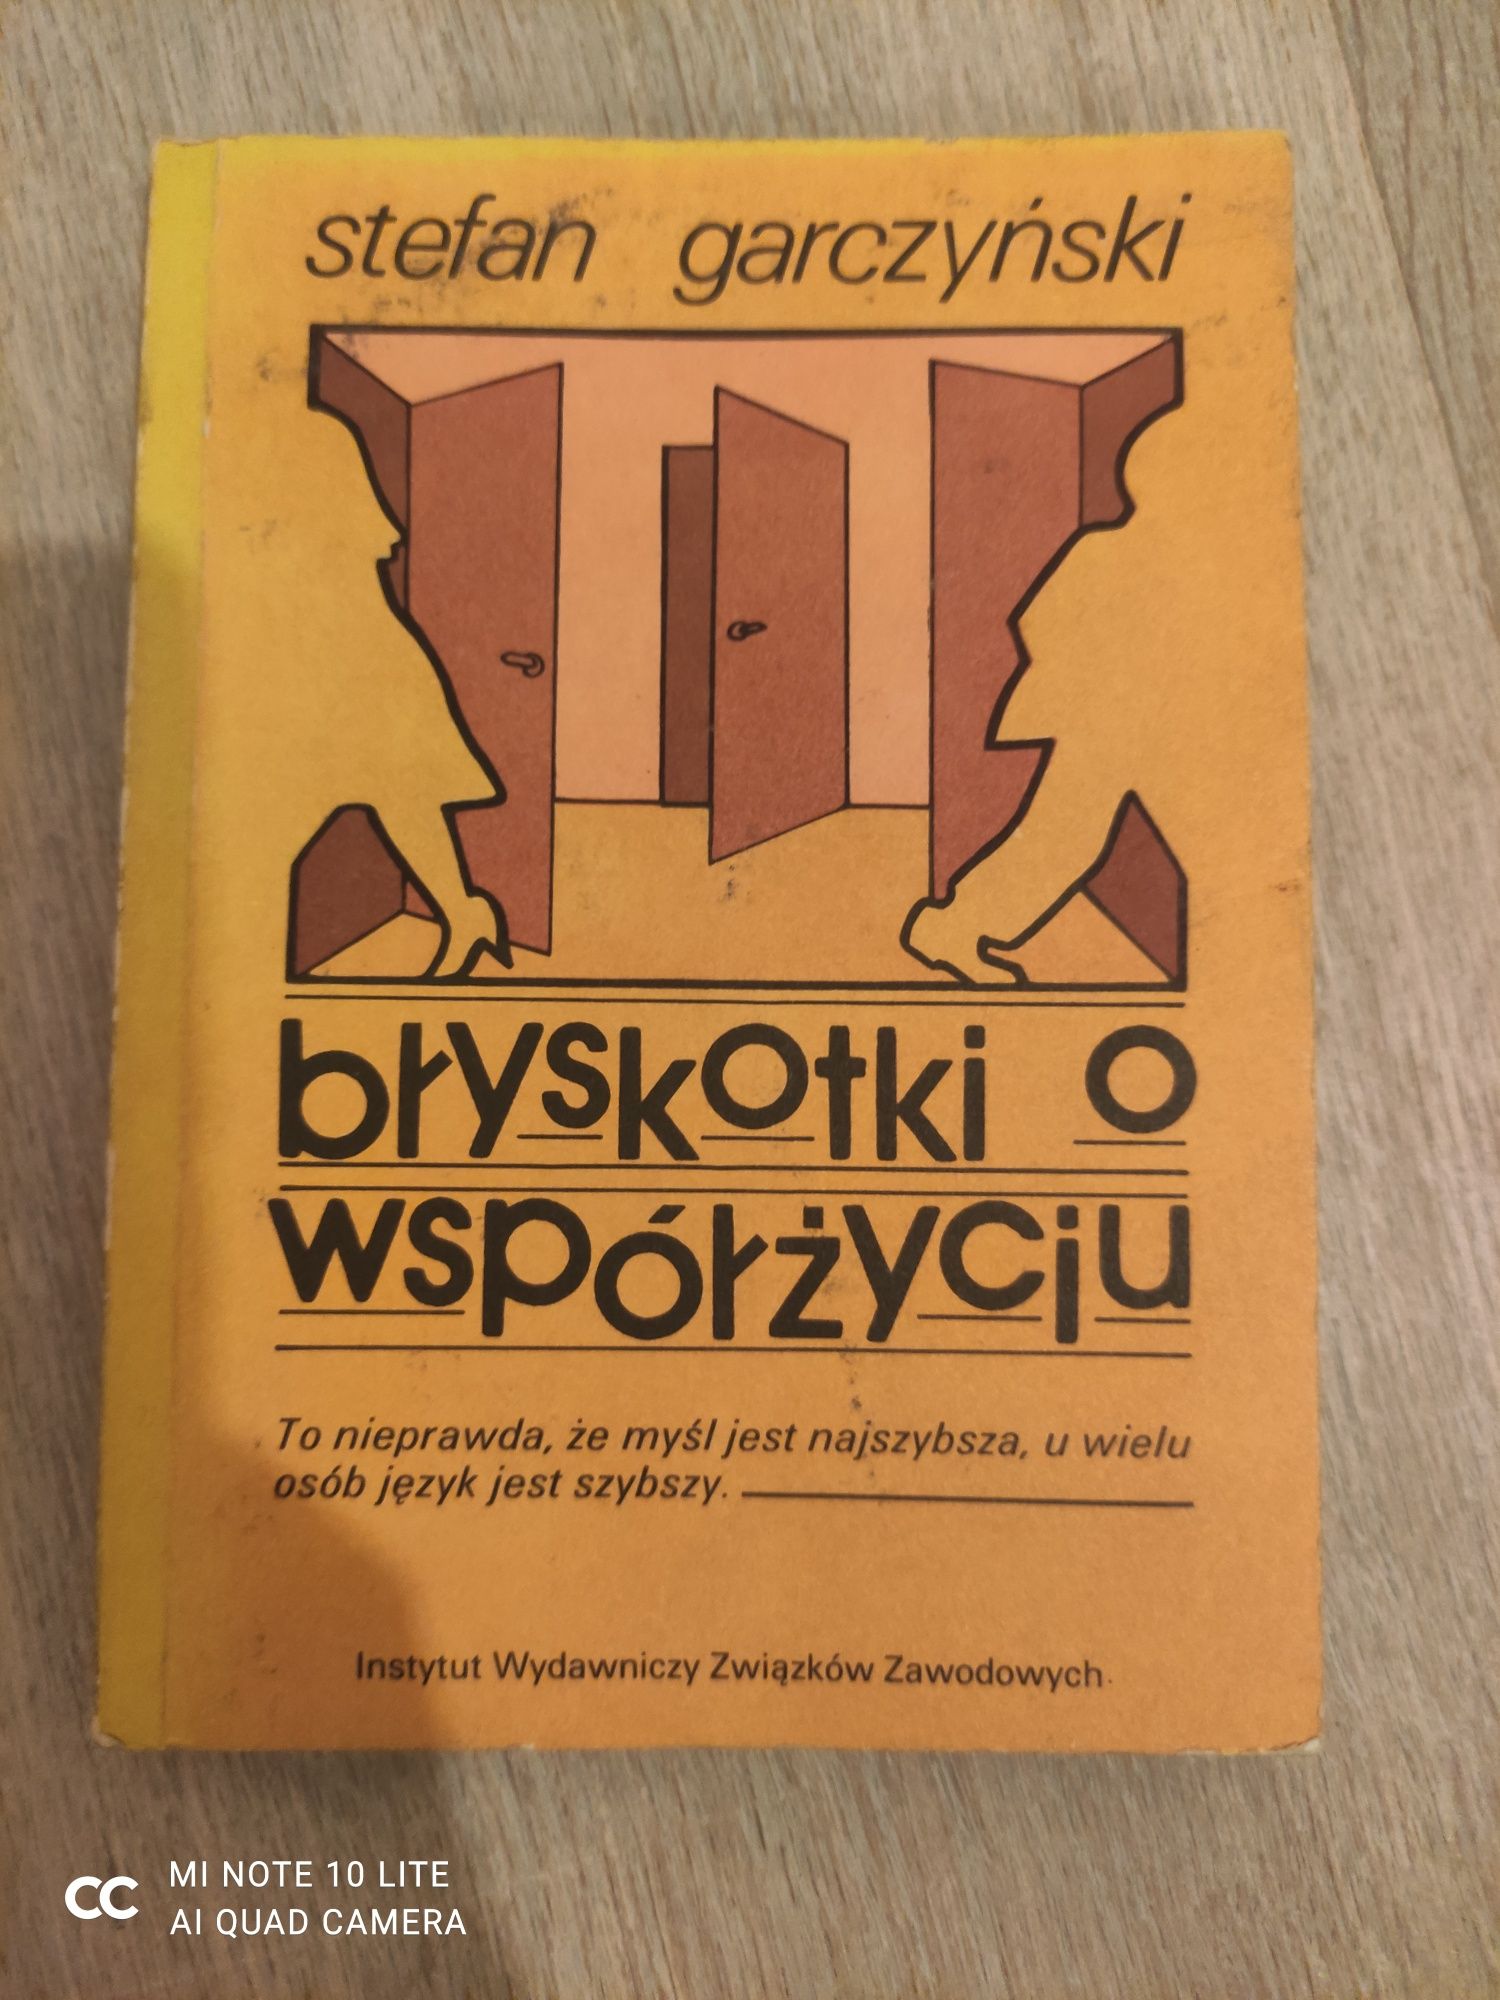 Książka "Błyskotki o współżyciu" Stefan Garczyński